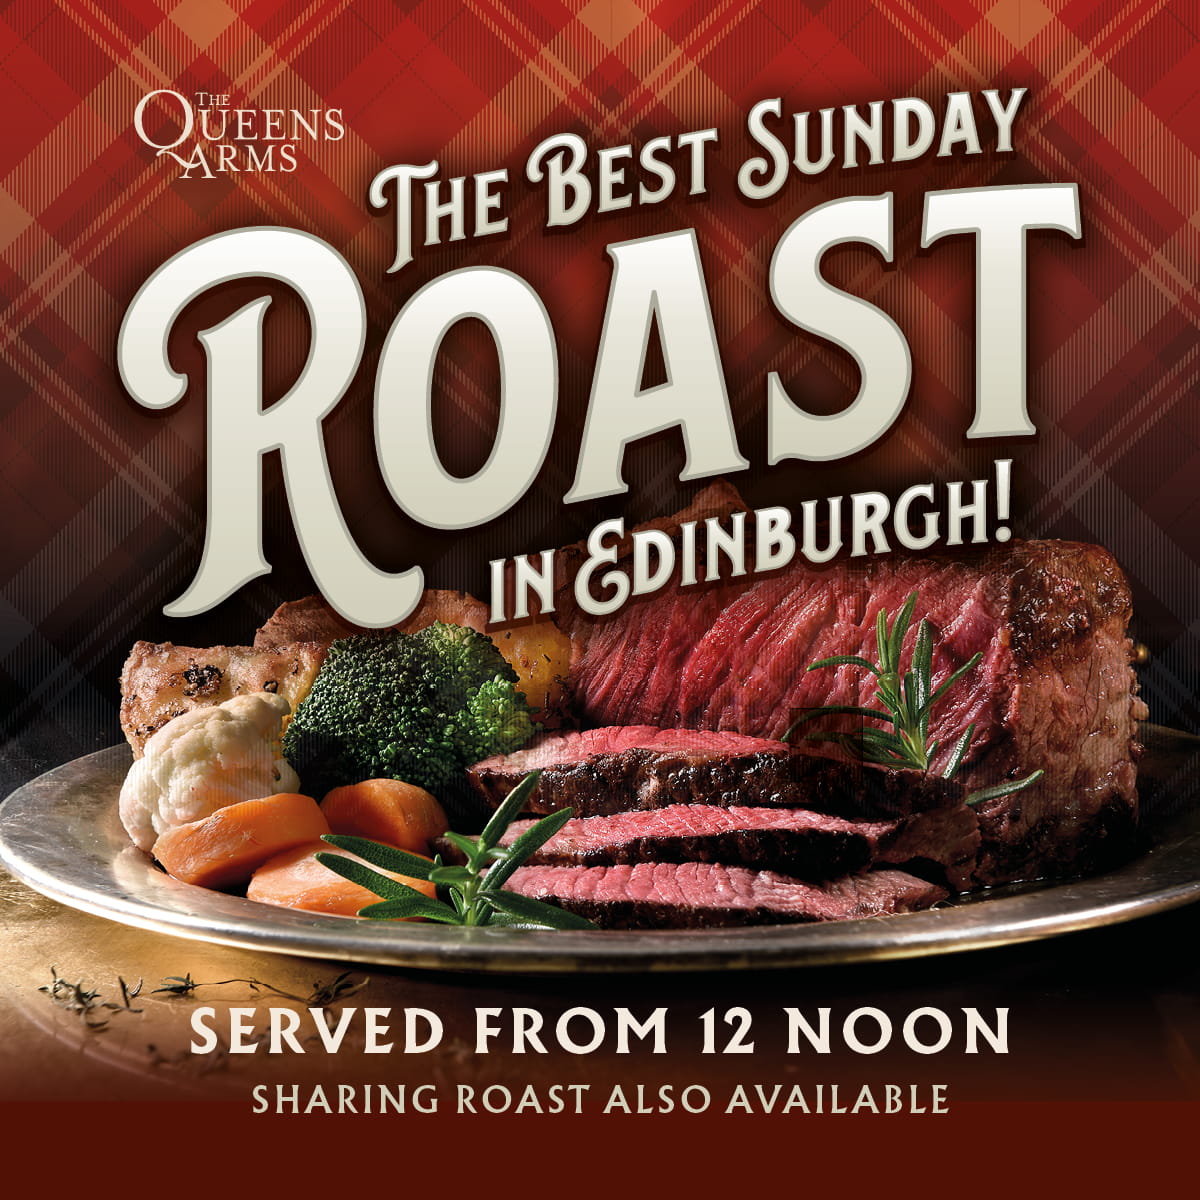 The Best Sunday Roast in Edinburgh